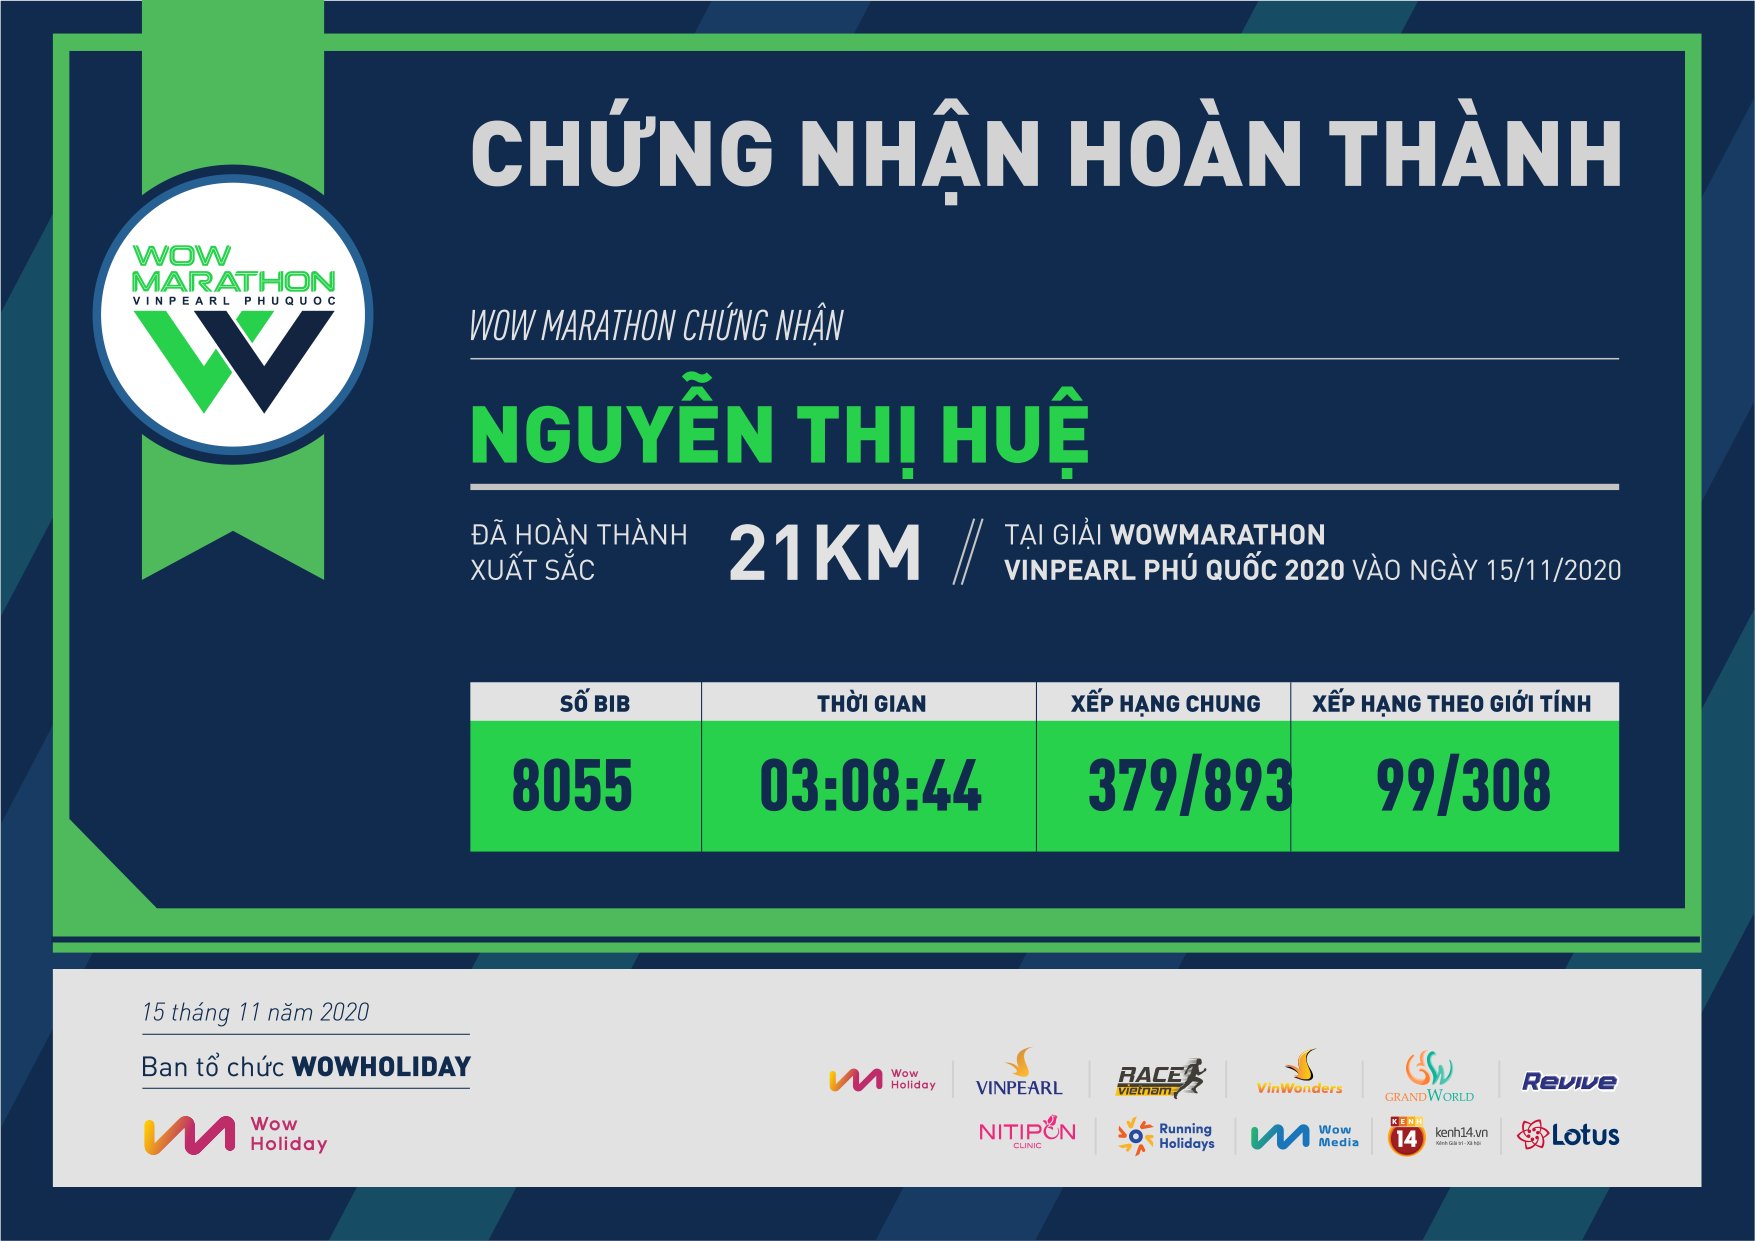 8055 - Nguyễn Thị Huệ